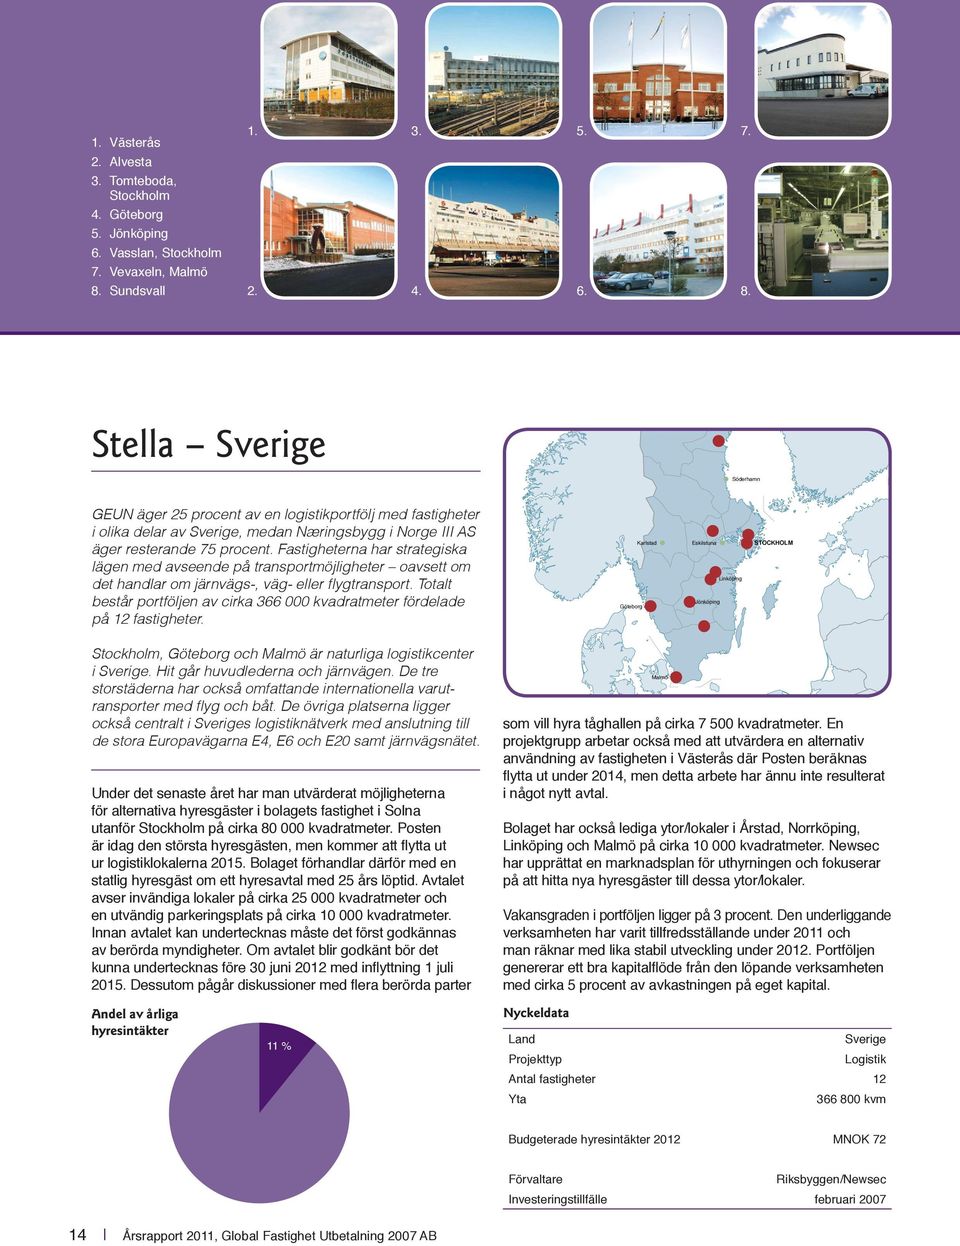 Stella Sverige Söderhamn GEUN äger 25 procent av en logistikportfölj med fastigheter i olika delar av Sverige, medan Næringsbygg i Norge III AS äger resterande 75 procent.